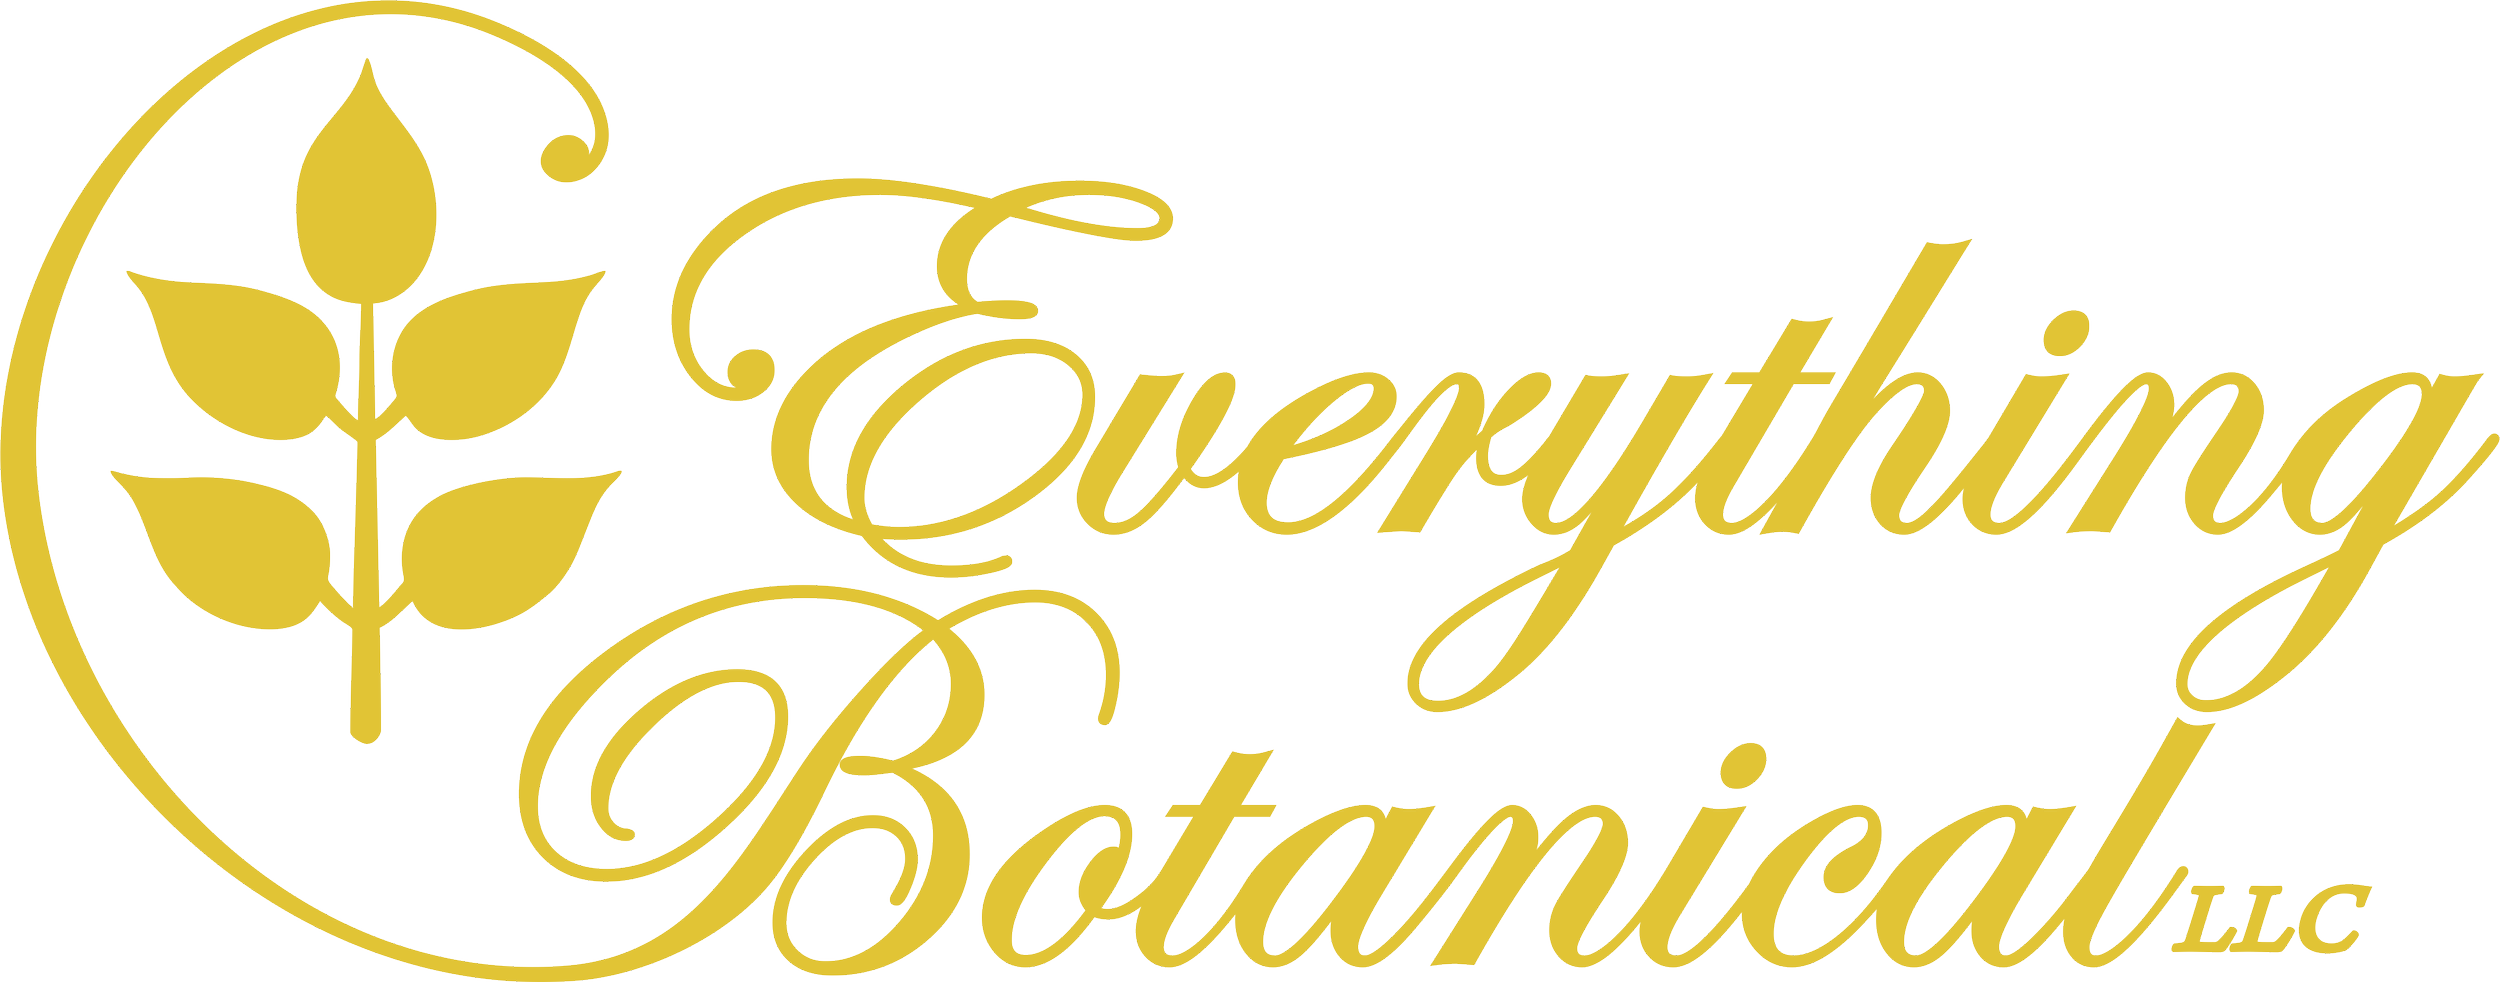 Everything Botanical - logo.png